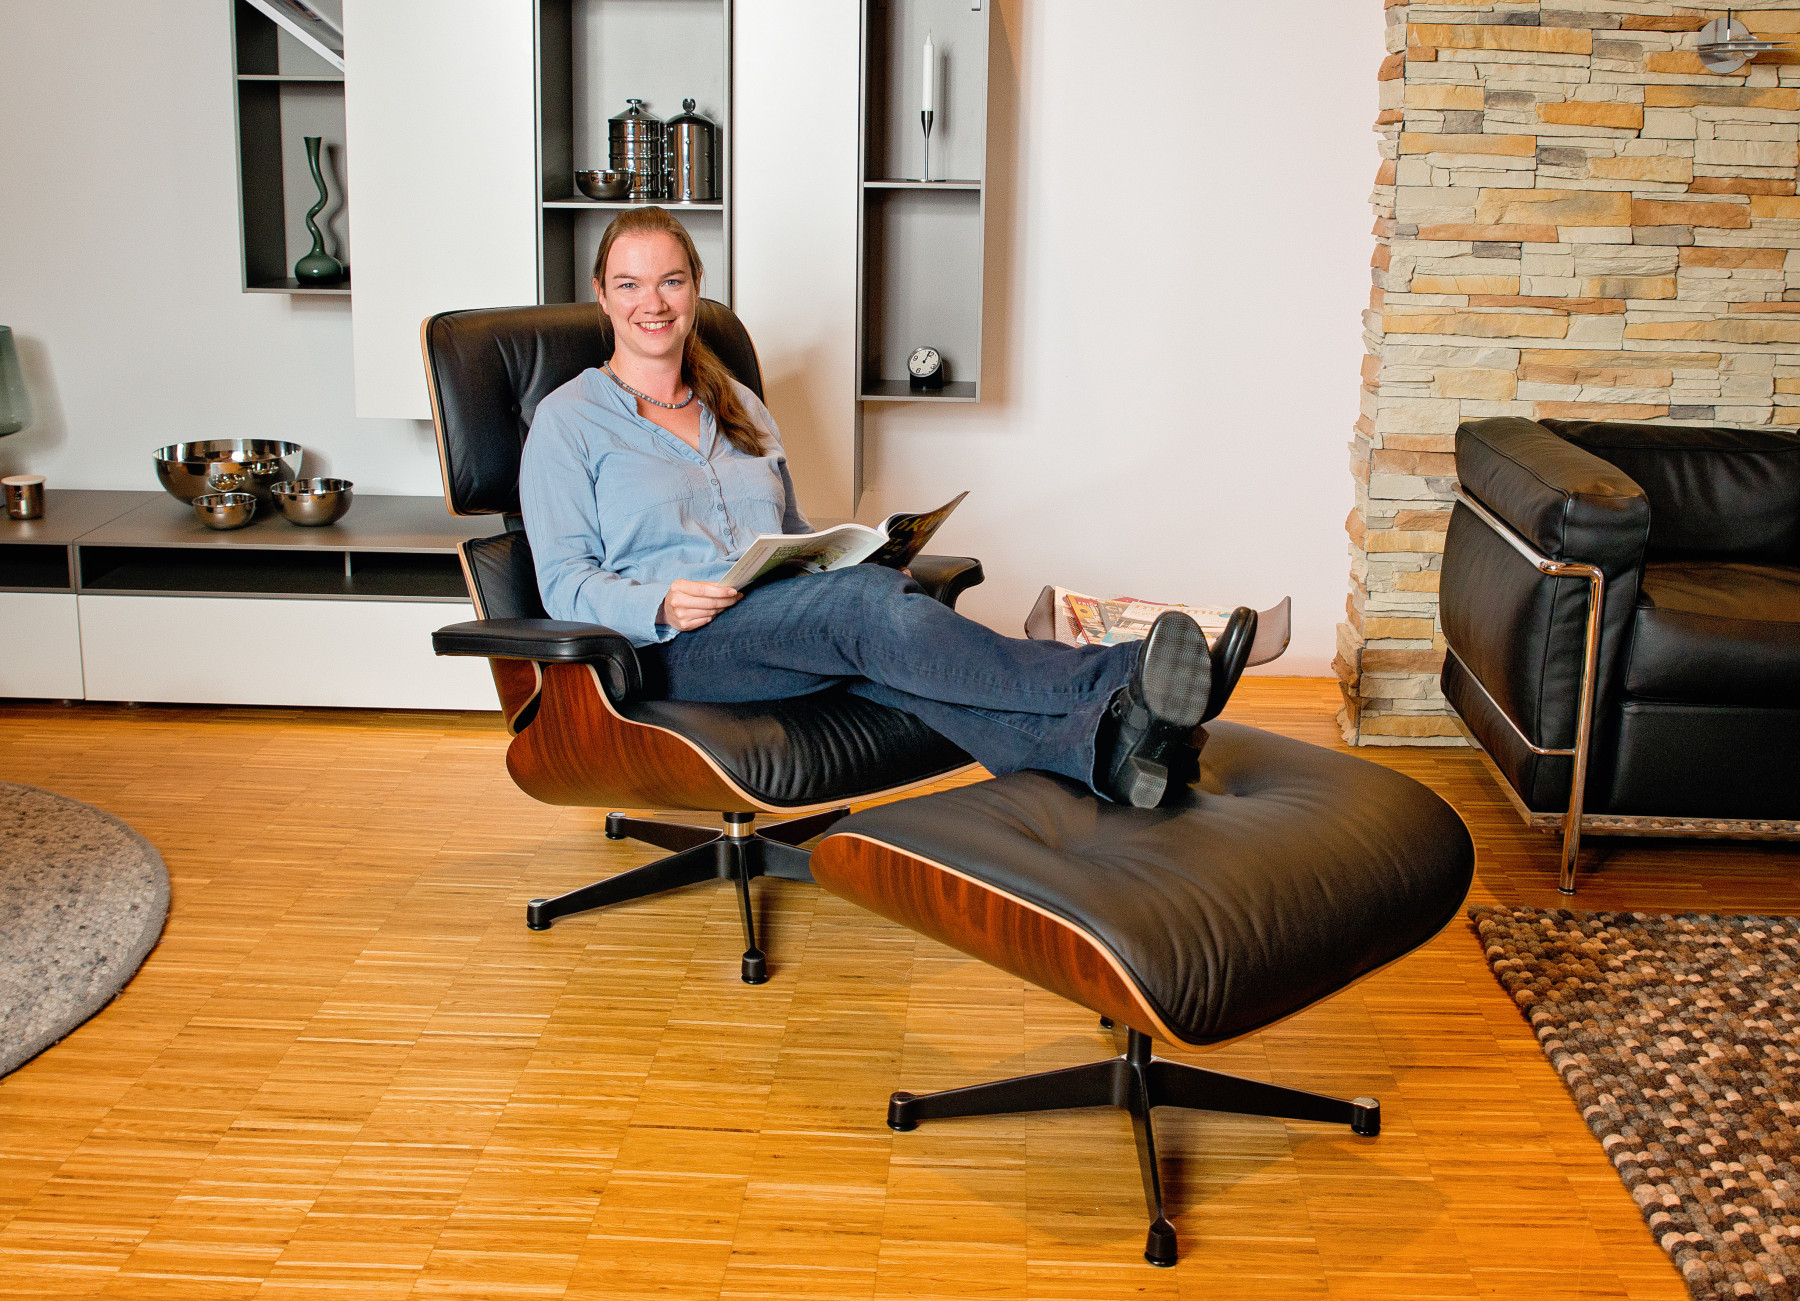 Eames Lounge Chair & Ottoman Sessel Vitra Kirschbaum - Leder Premium F - poliert - Seiten schwarz